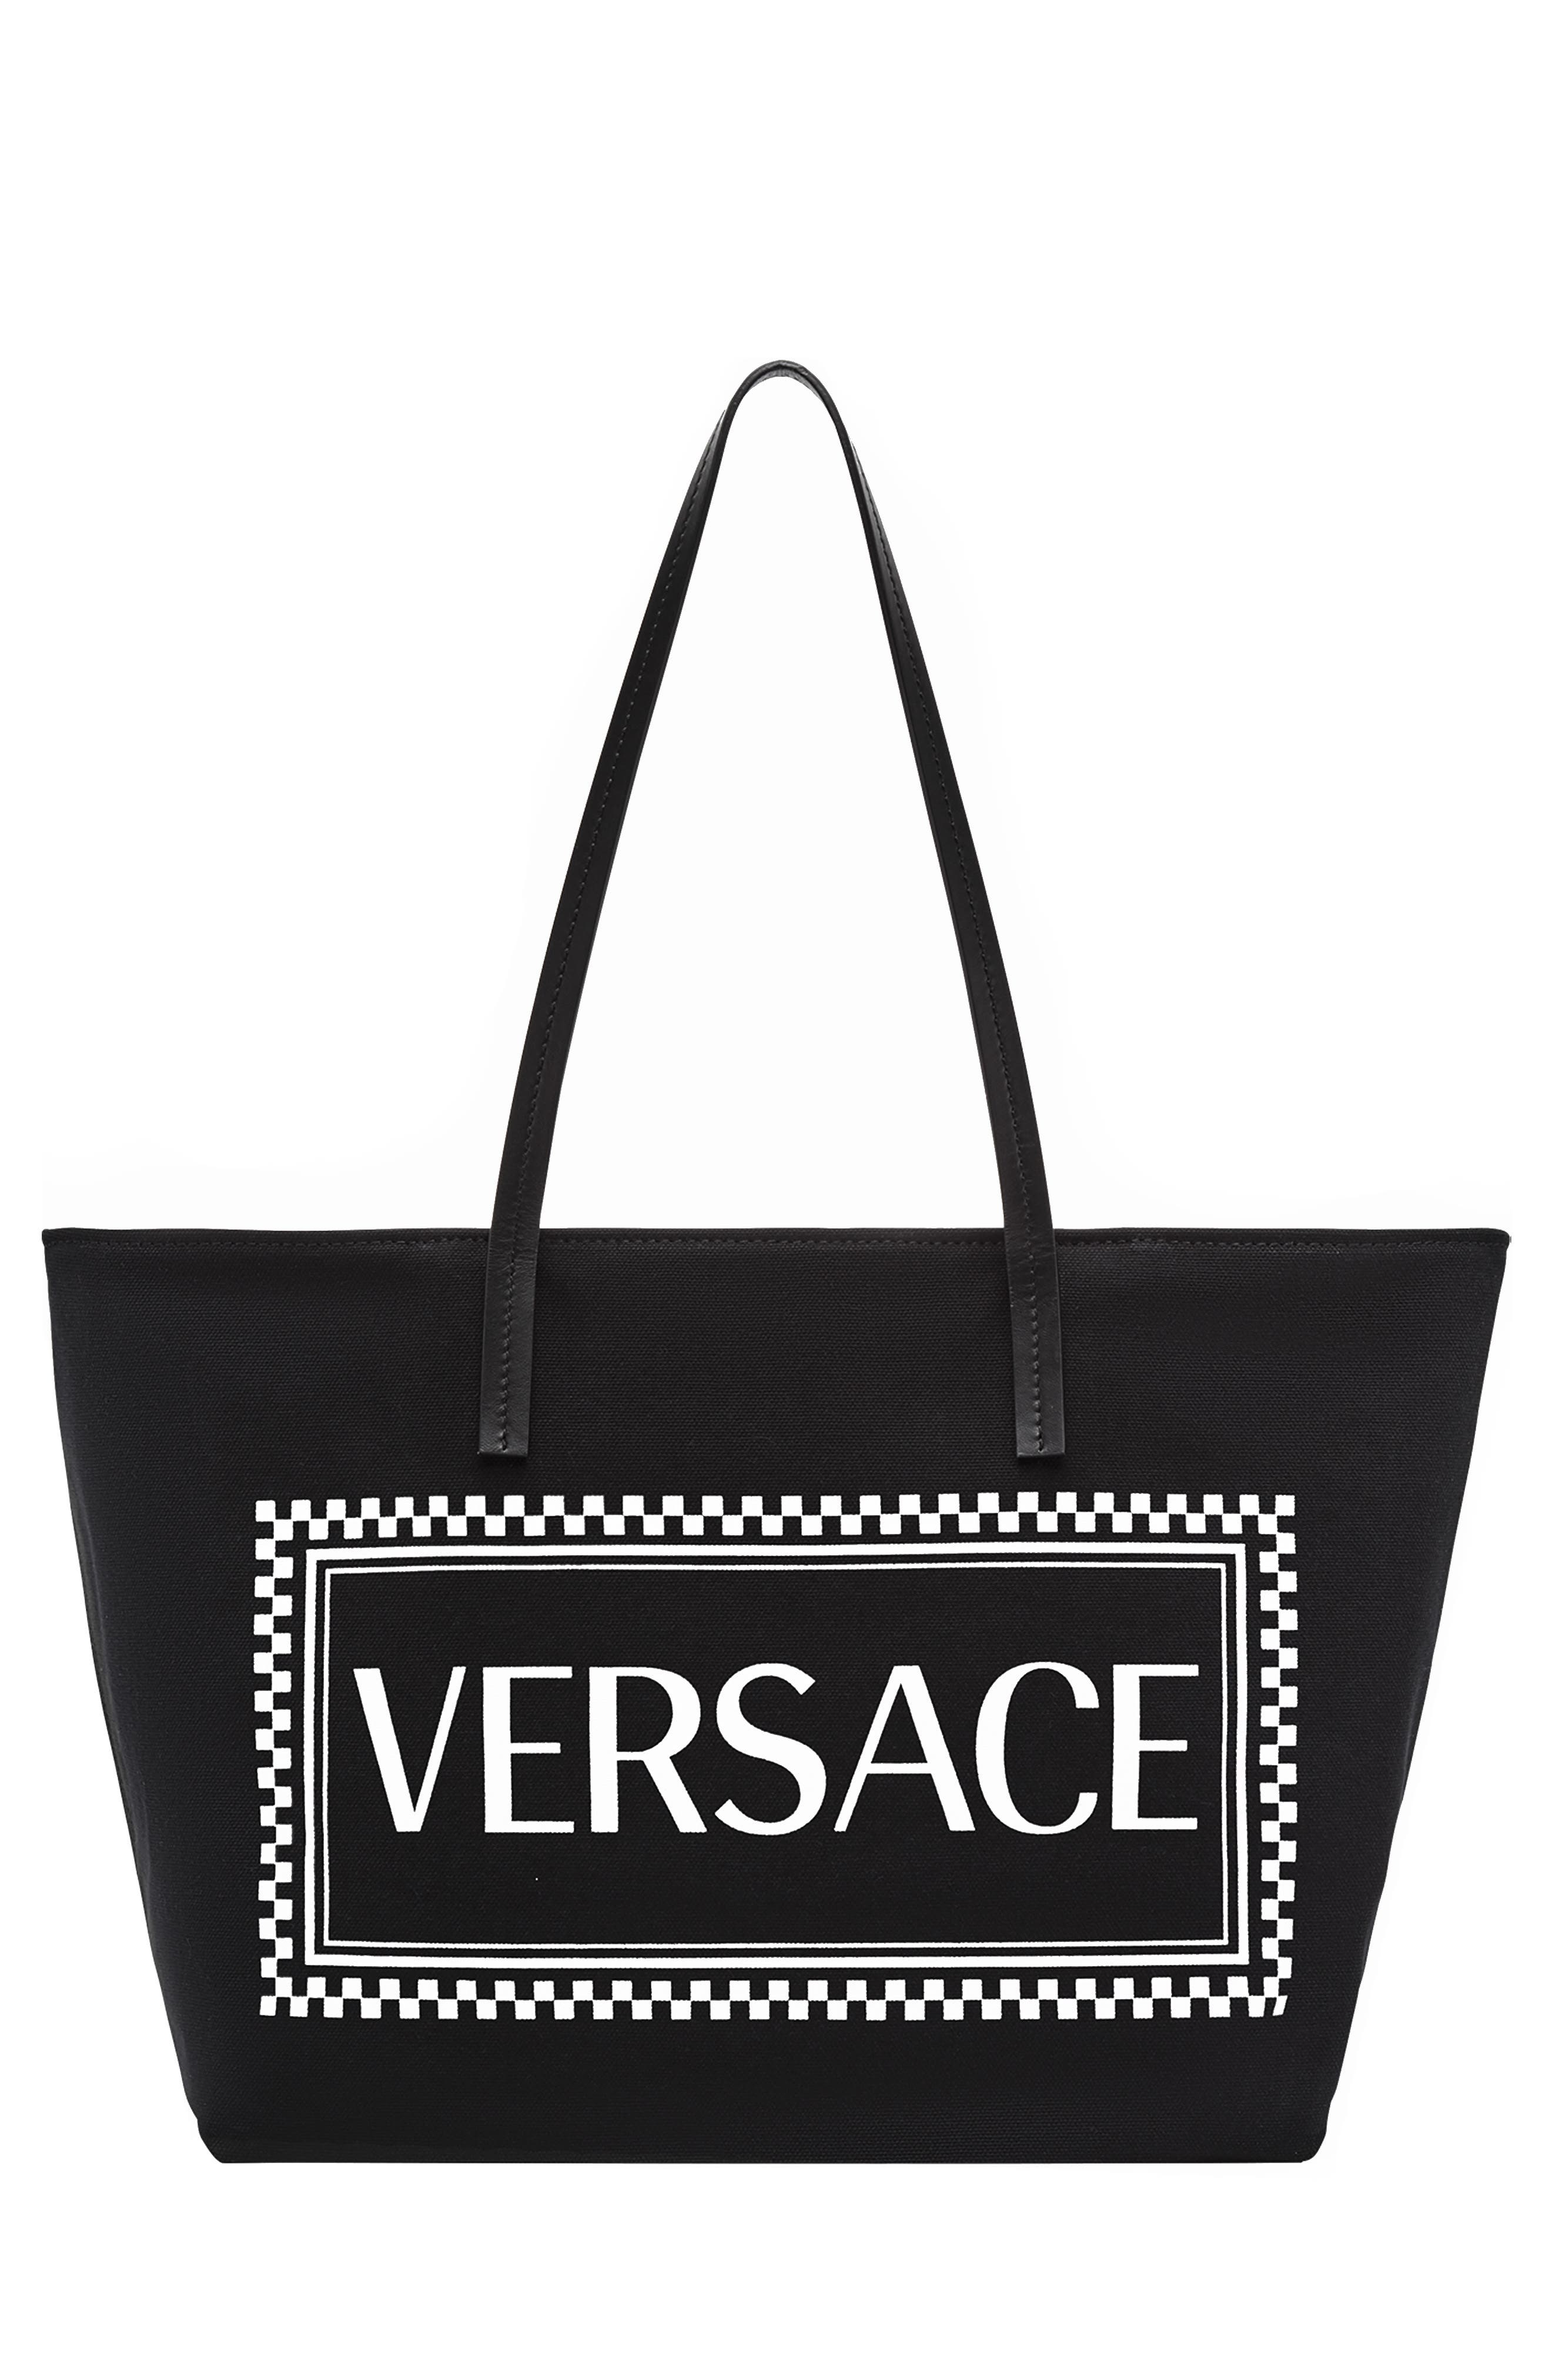 versace tote handbags